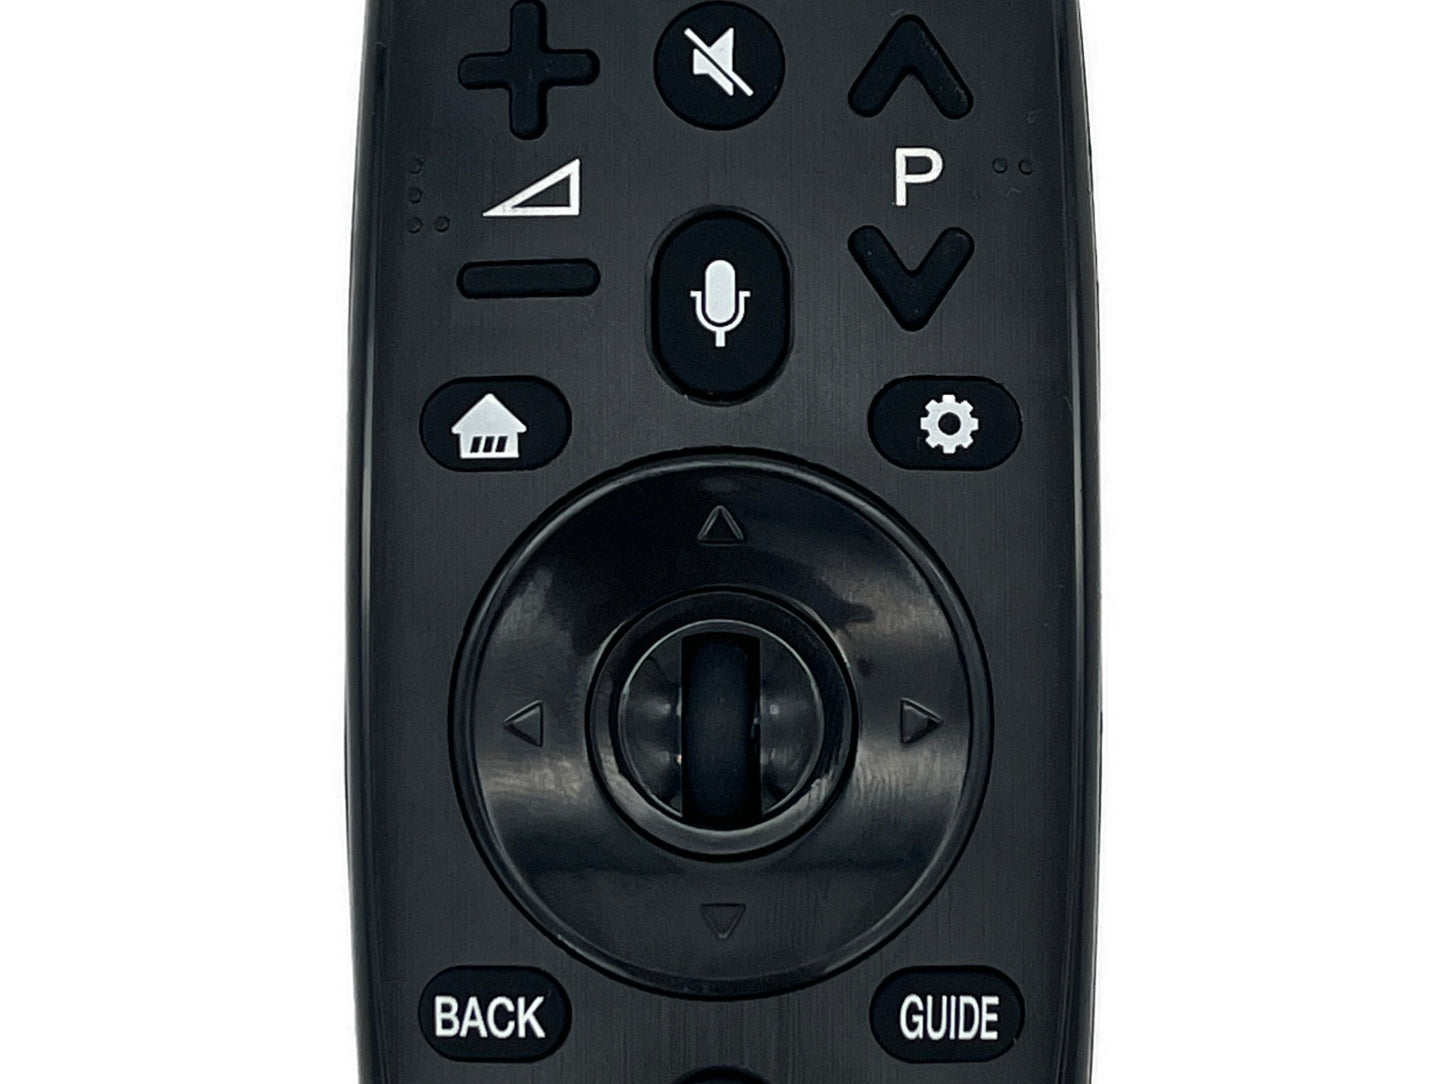 azurano Fernbedienung Magic Remote AN-MR18BA, AGF79298801 für 2018 LG Smart TV mit Sprachsteuerung, Mausfunktion, Direktasten für Netflix & Amazon Video - Bild 4